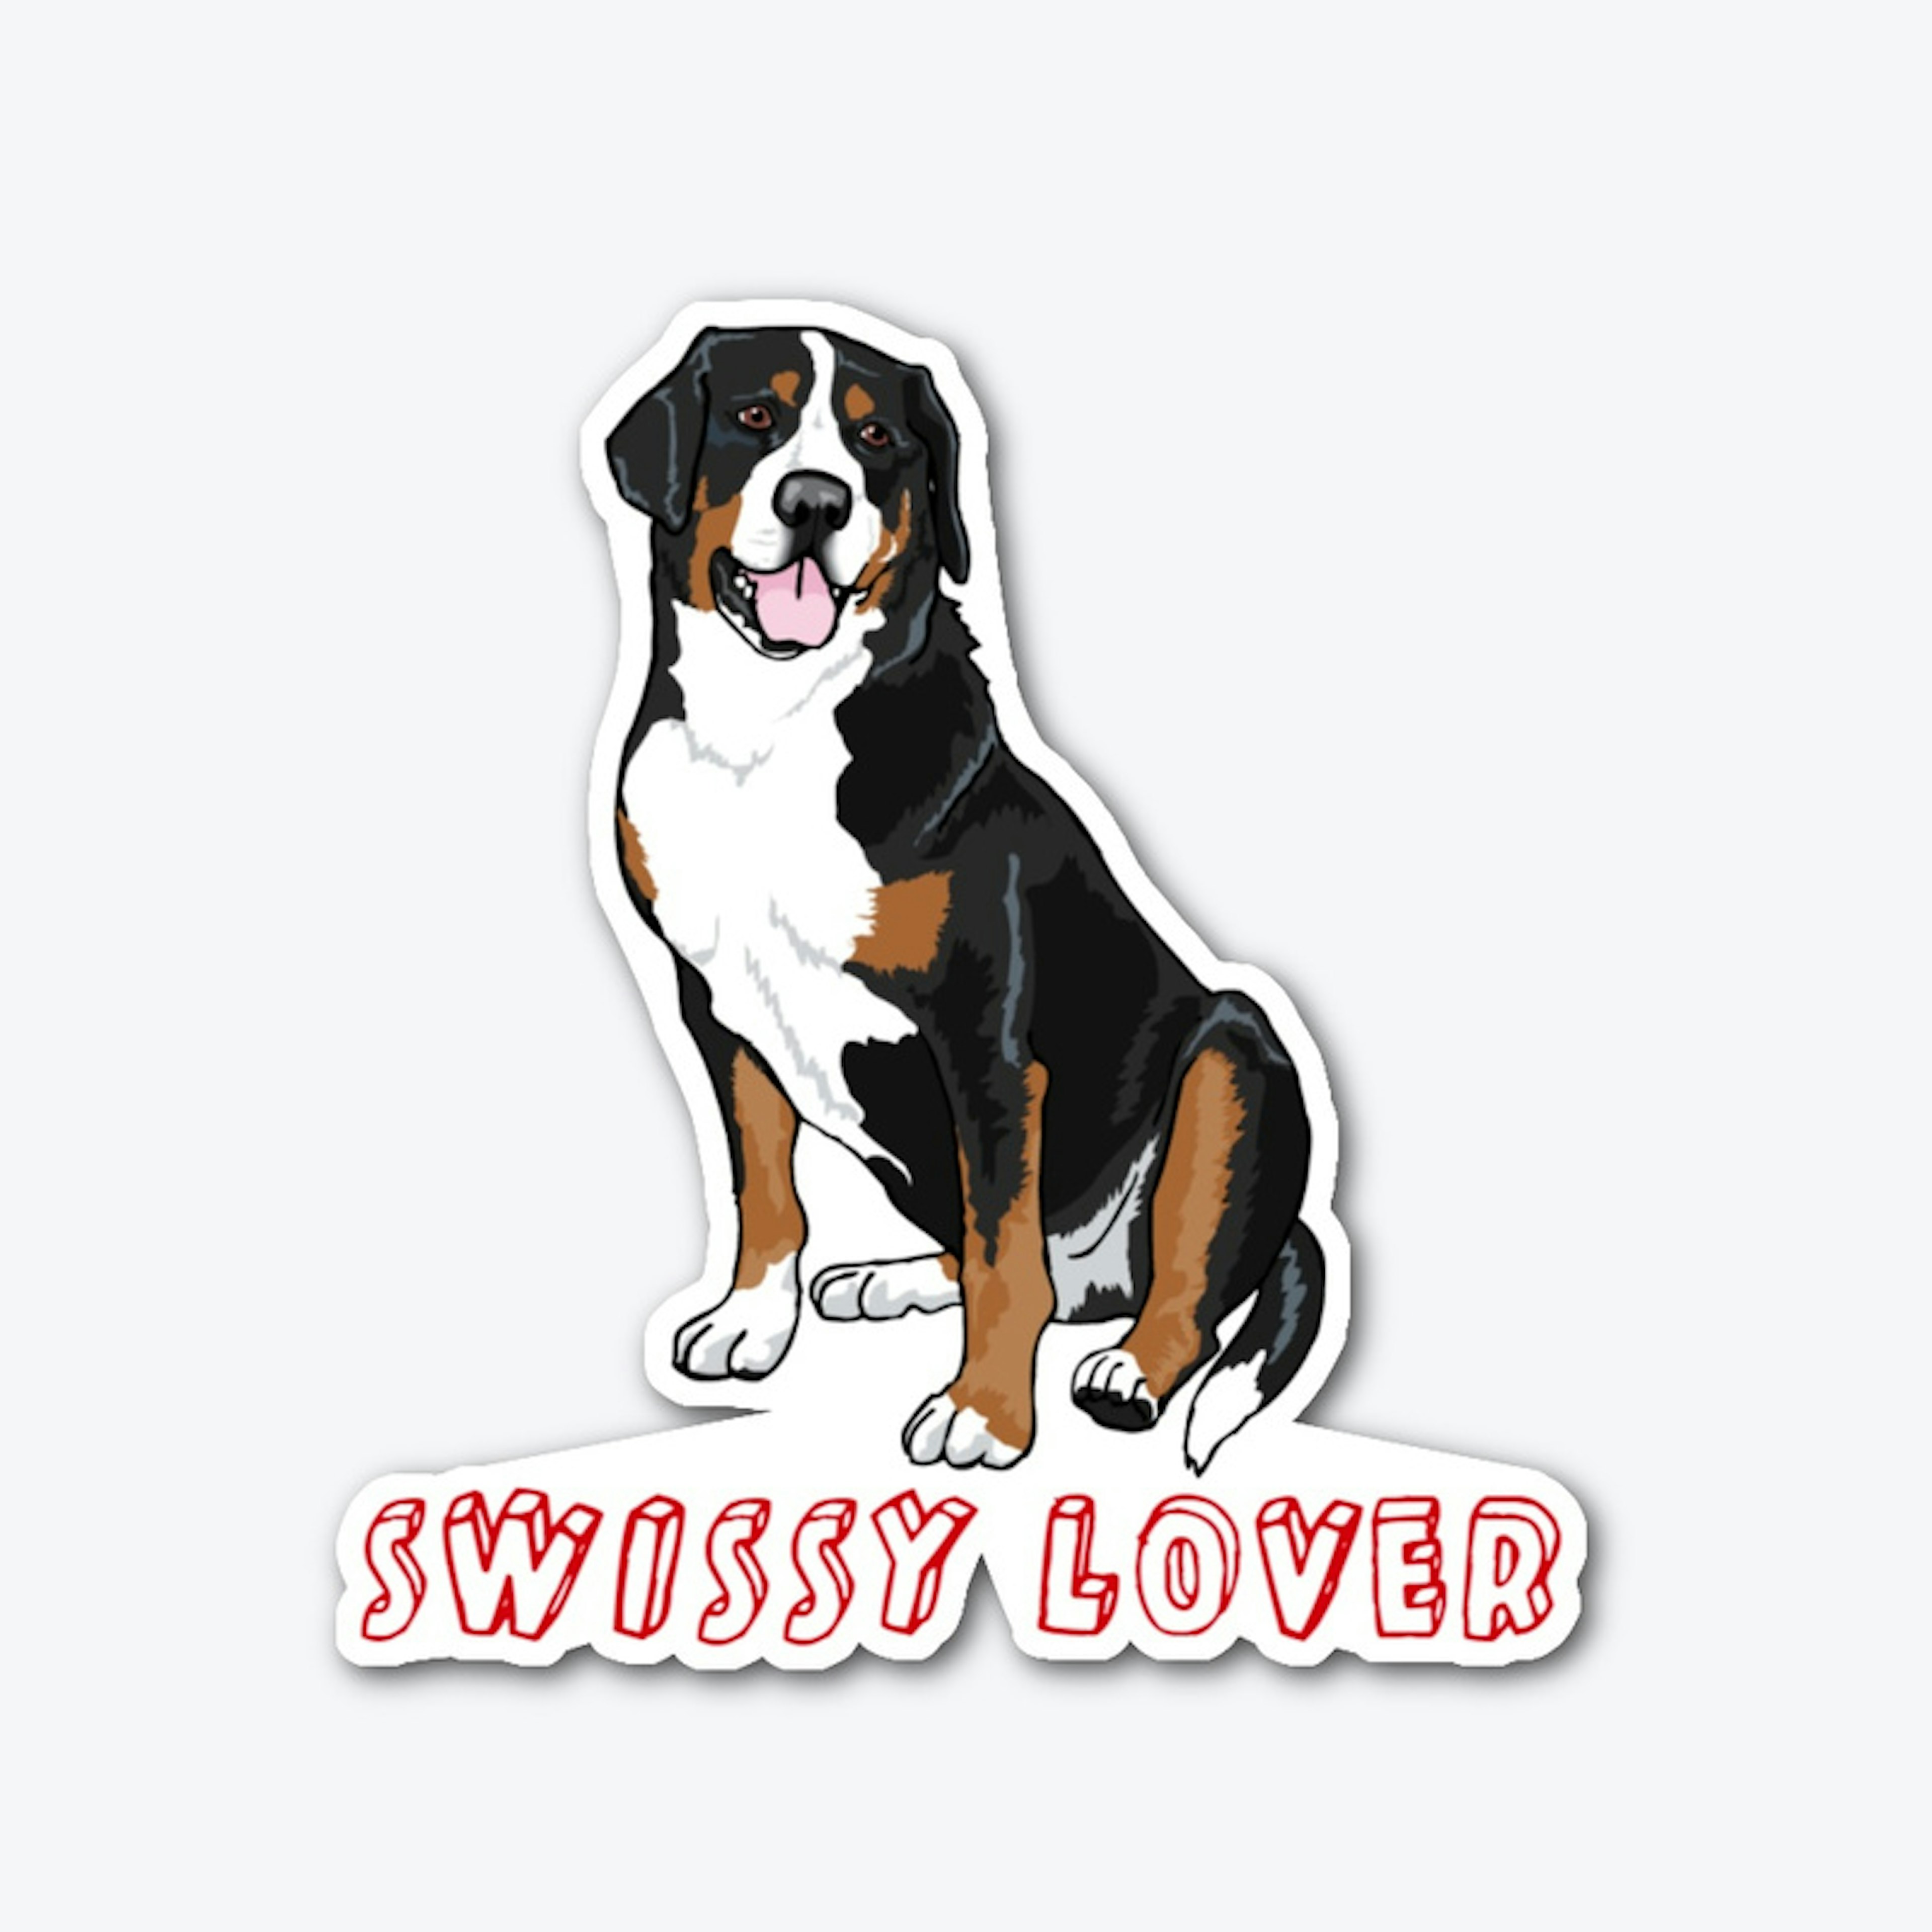 Swissy Lover Sticker